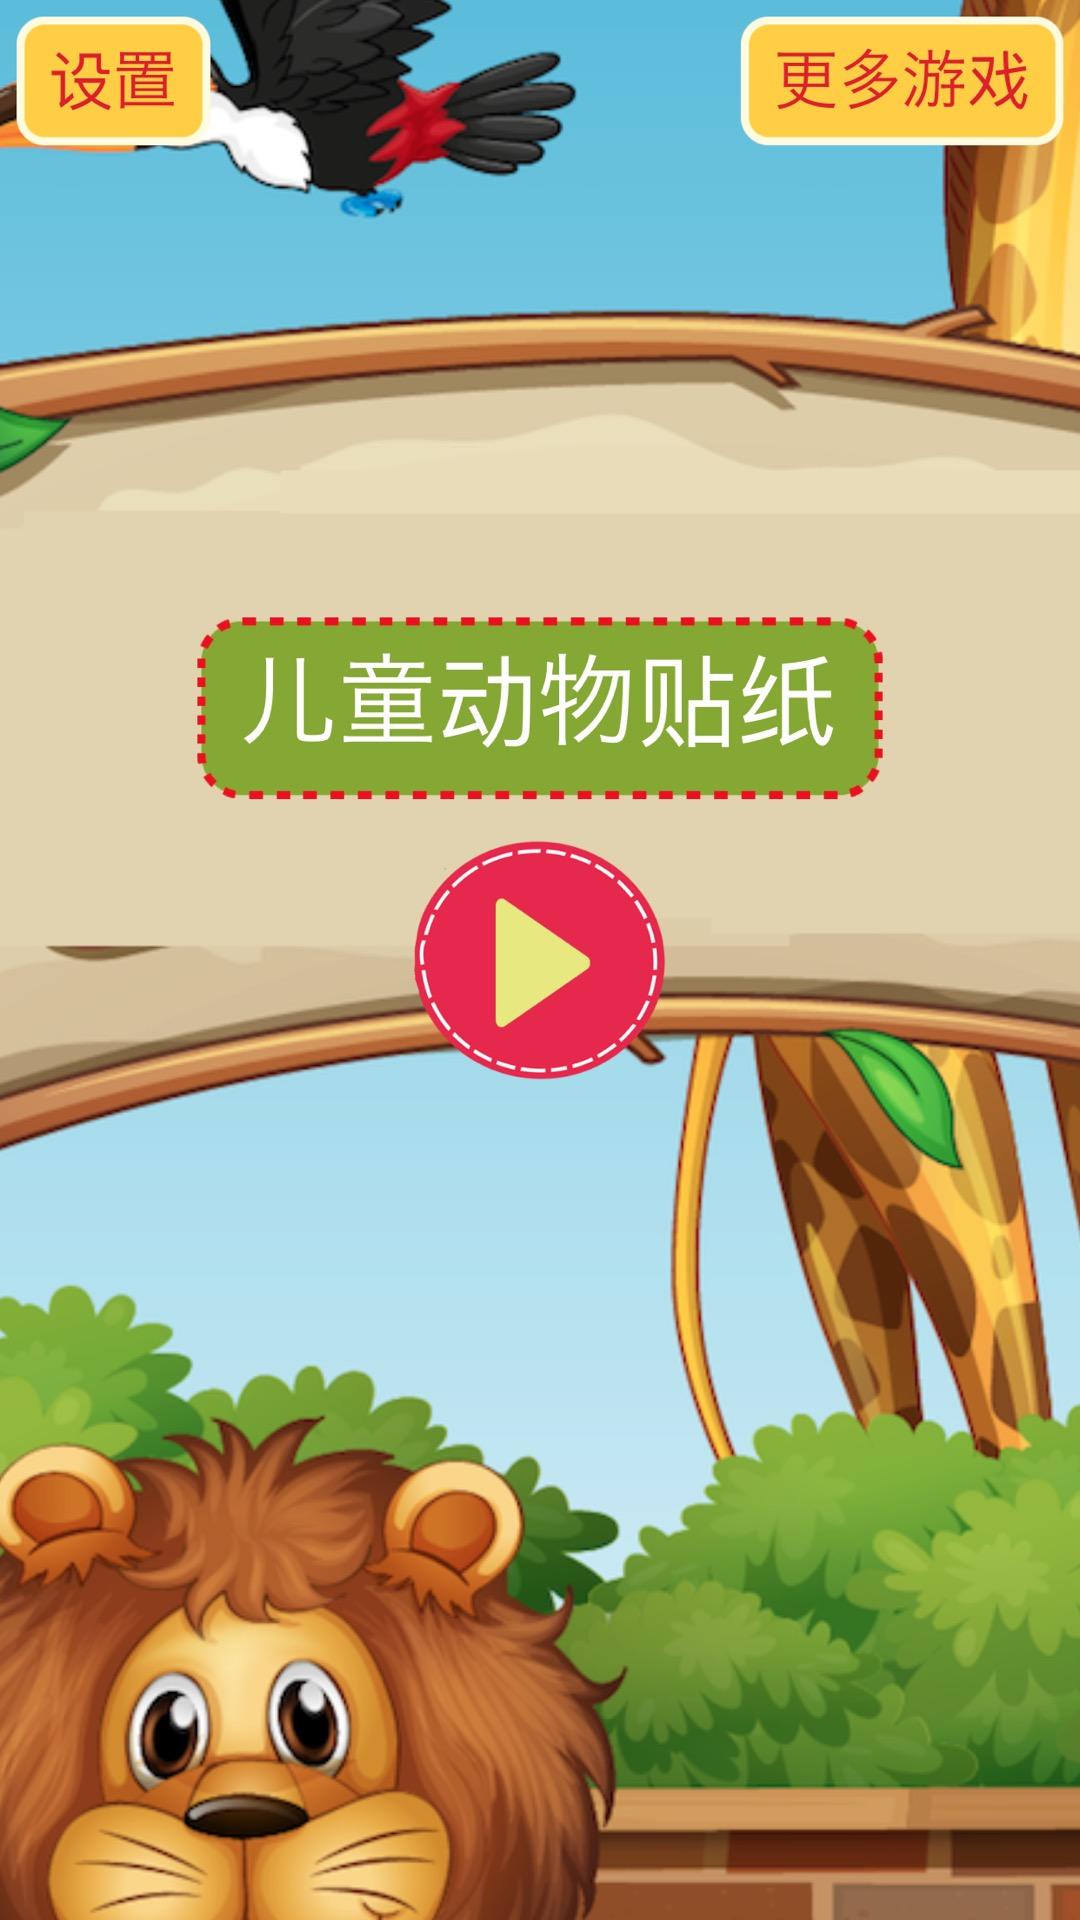 Screenshot 1 of 어린이를 위한 동물 스티커 - 어린이를 위한 조기 학습 학습 게임 1.7.4